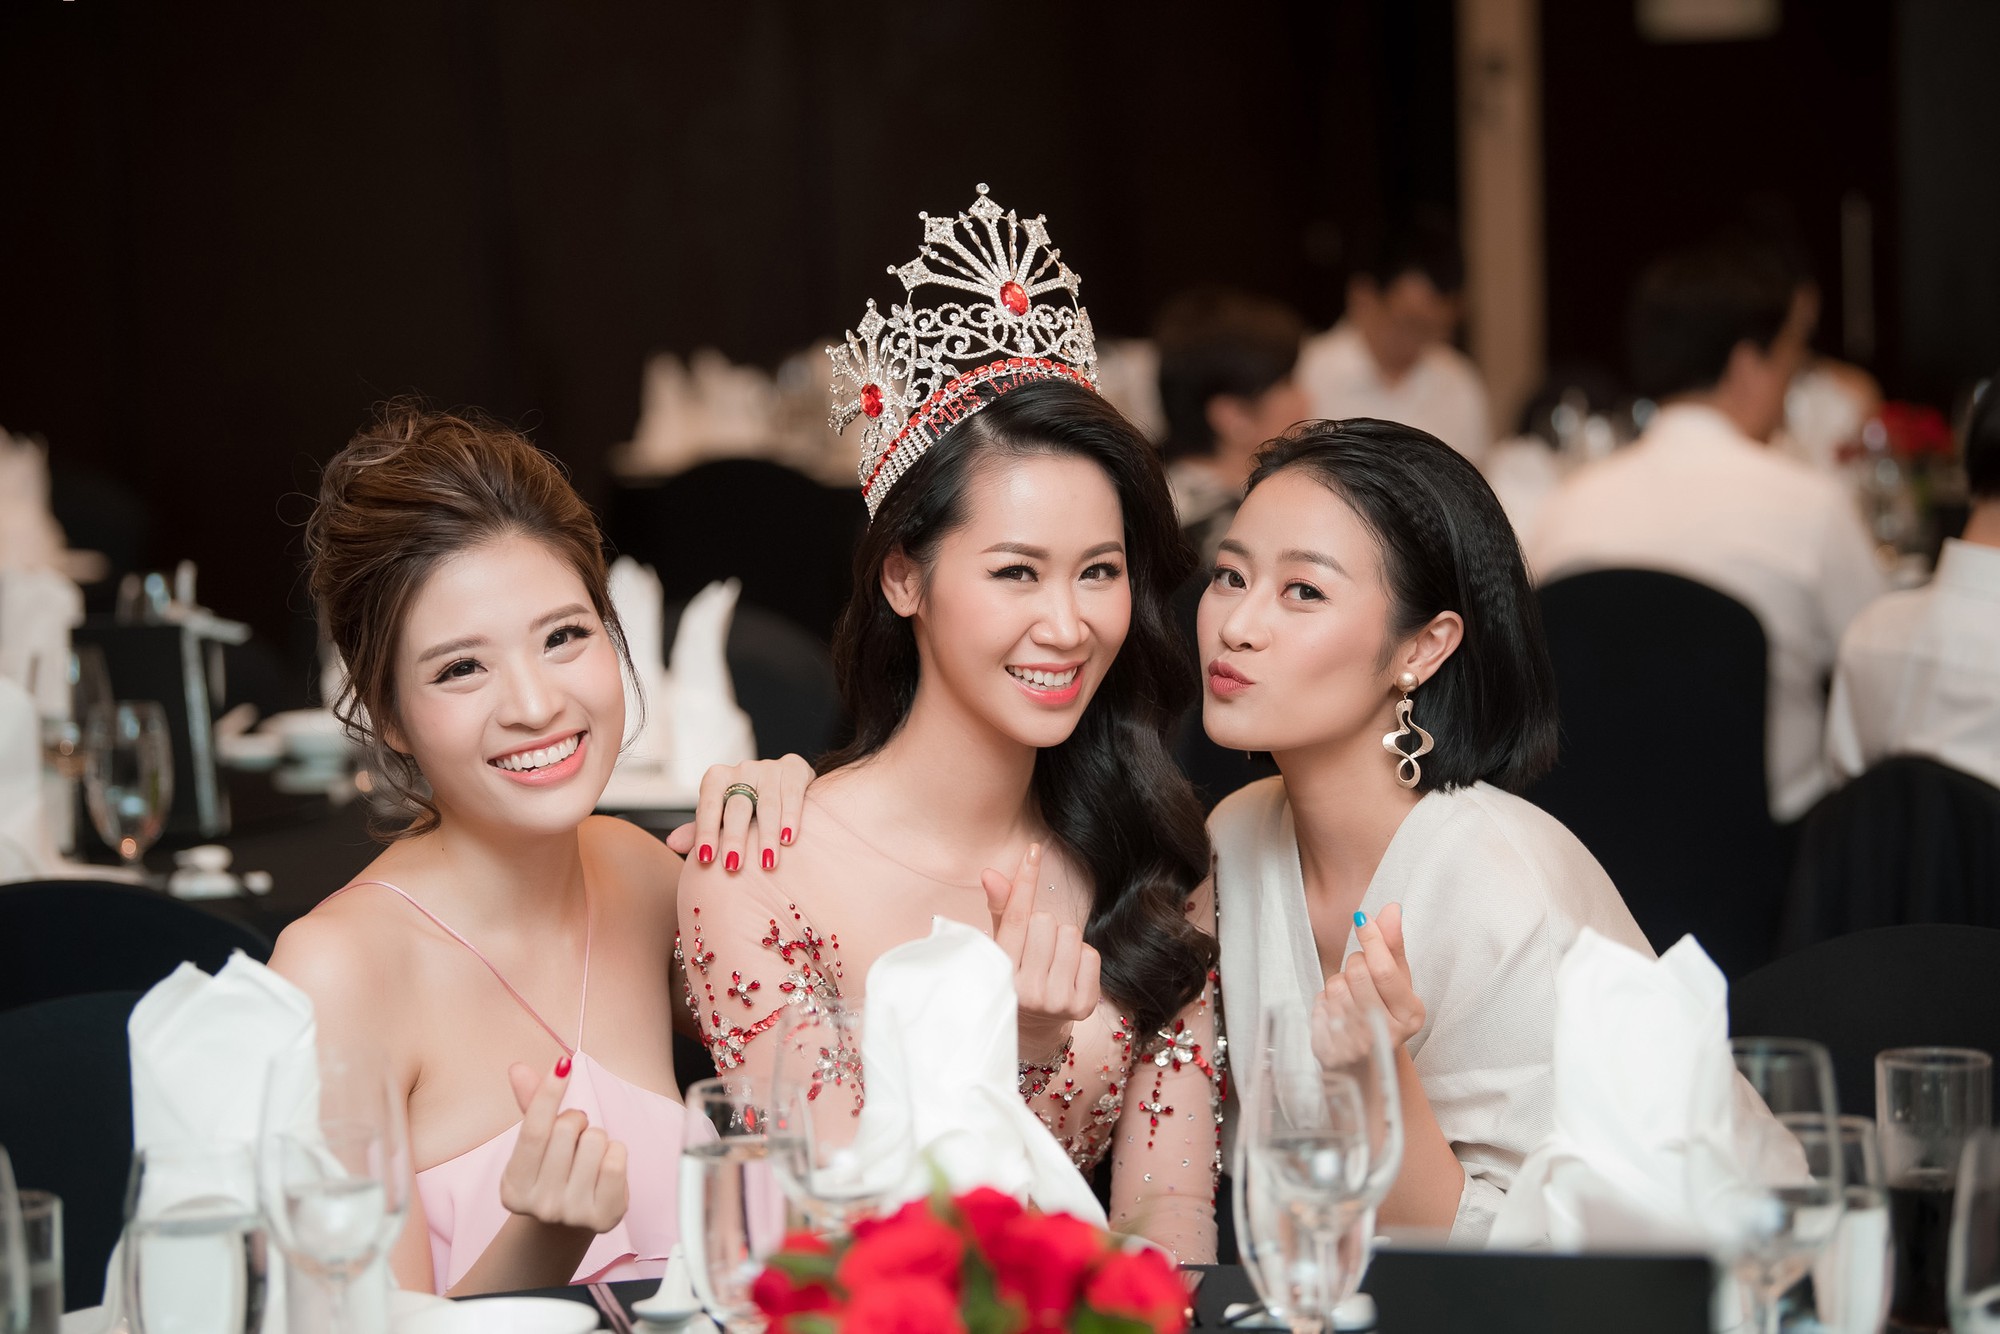 Dương Thùy Linh kể về cái ôm sau cánh gà trước khi được xướng tên Hoa hậu Quý bà toàn thế giới 2018 - Ảnh 13.